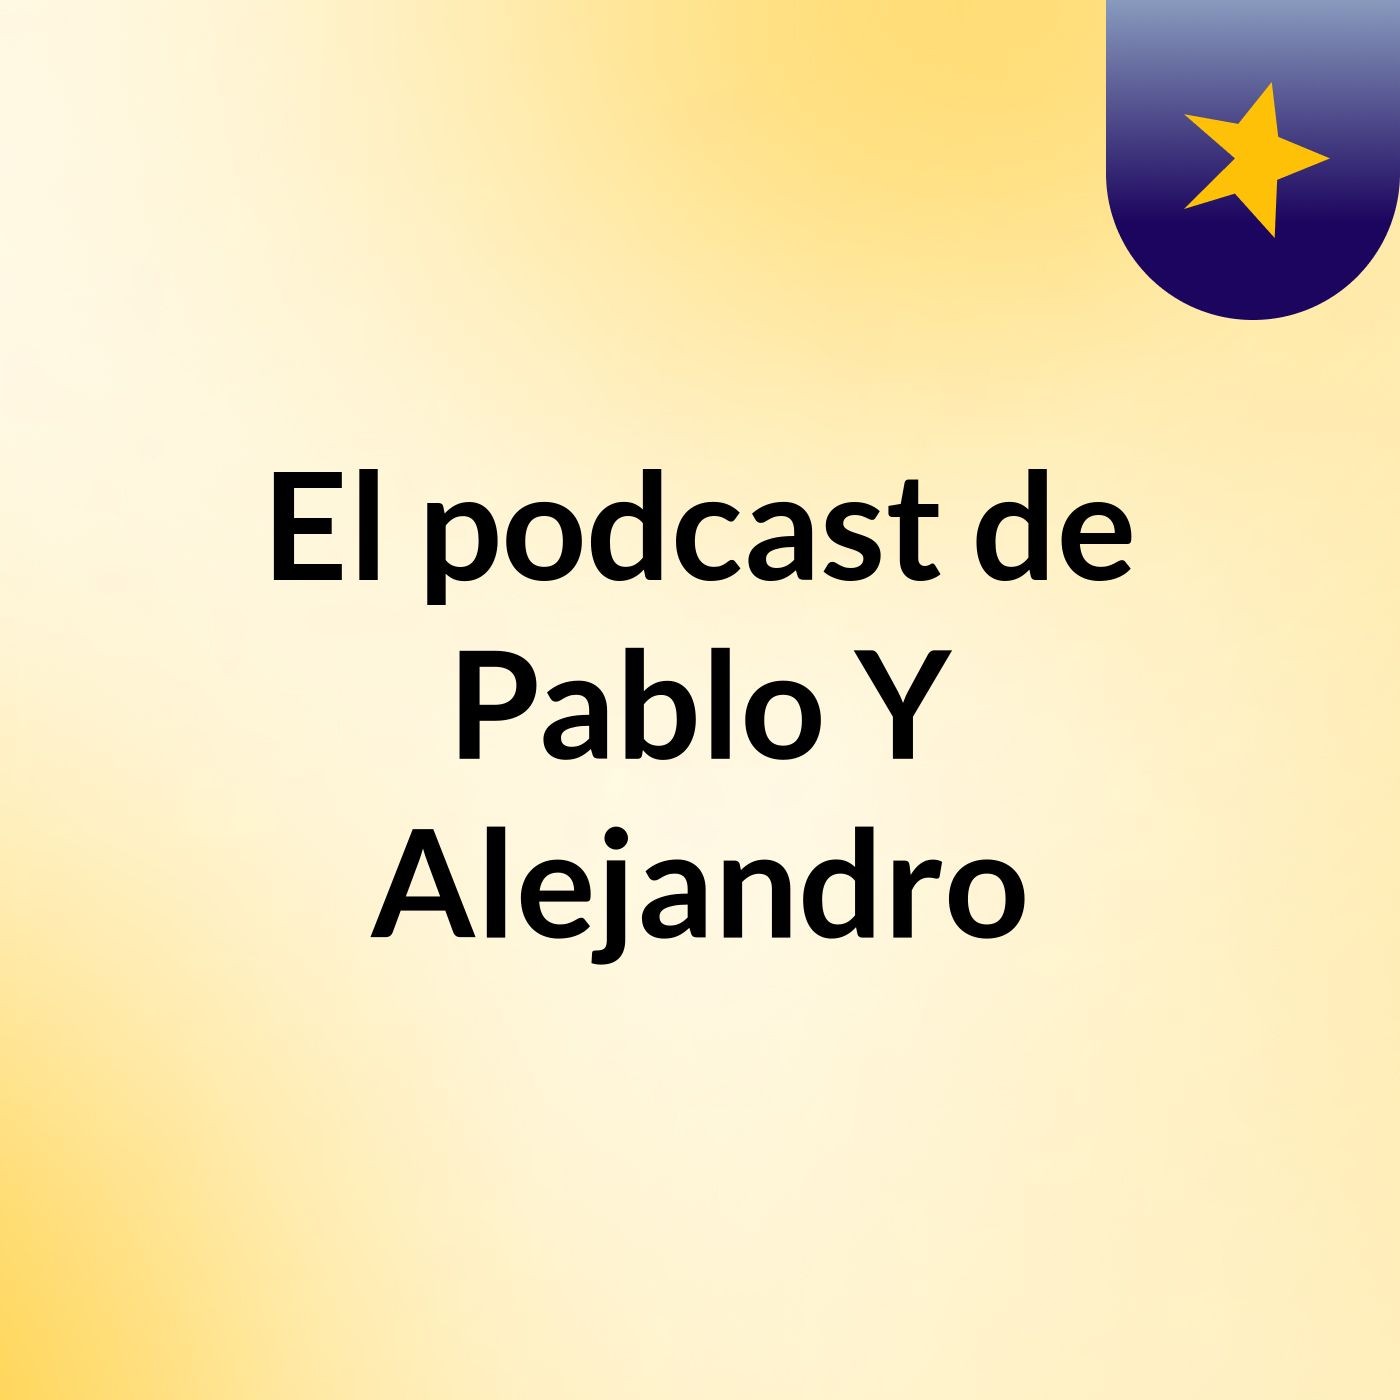 El podcast de Pablo Y Alejandro